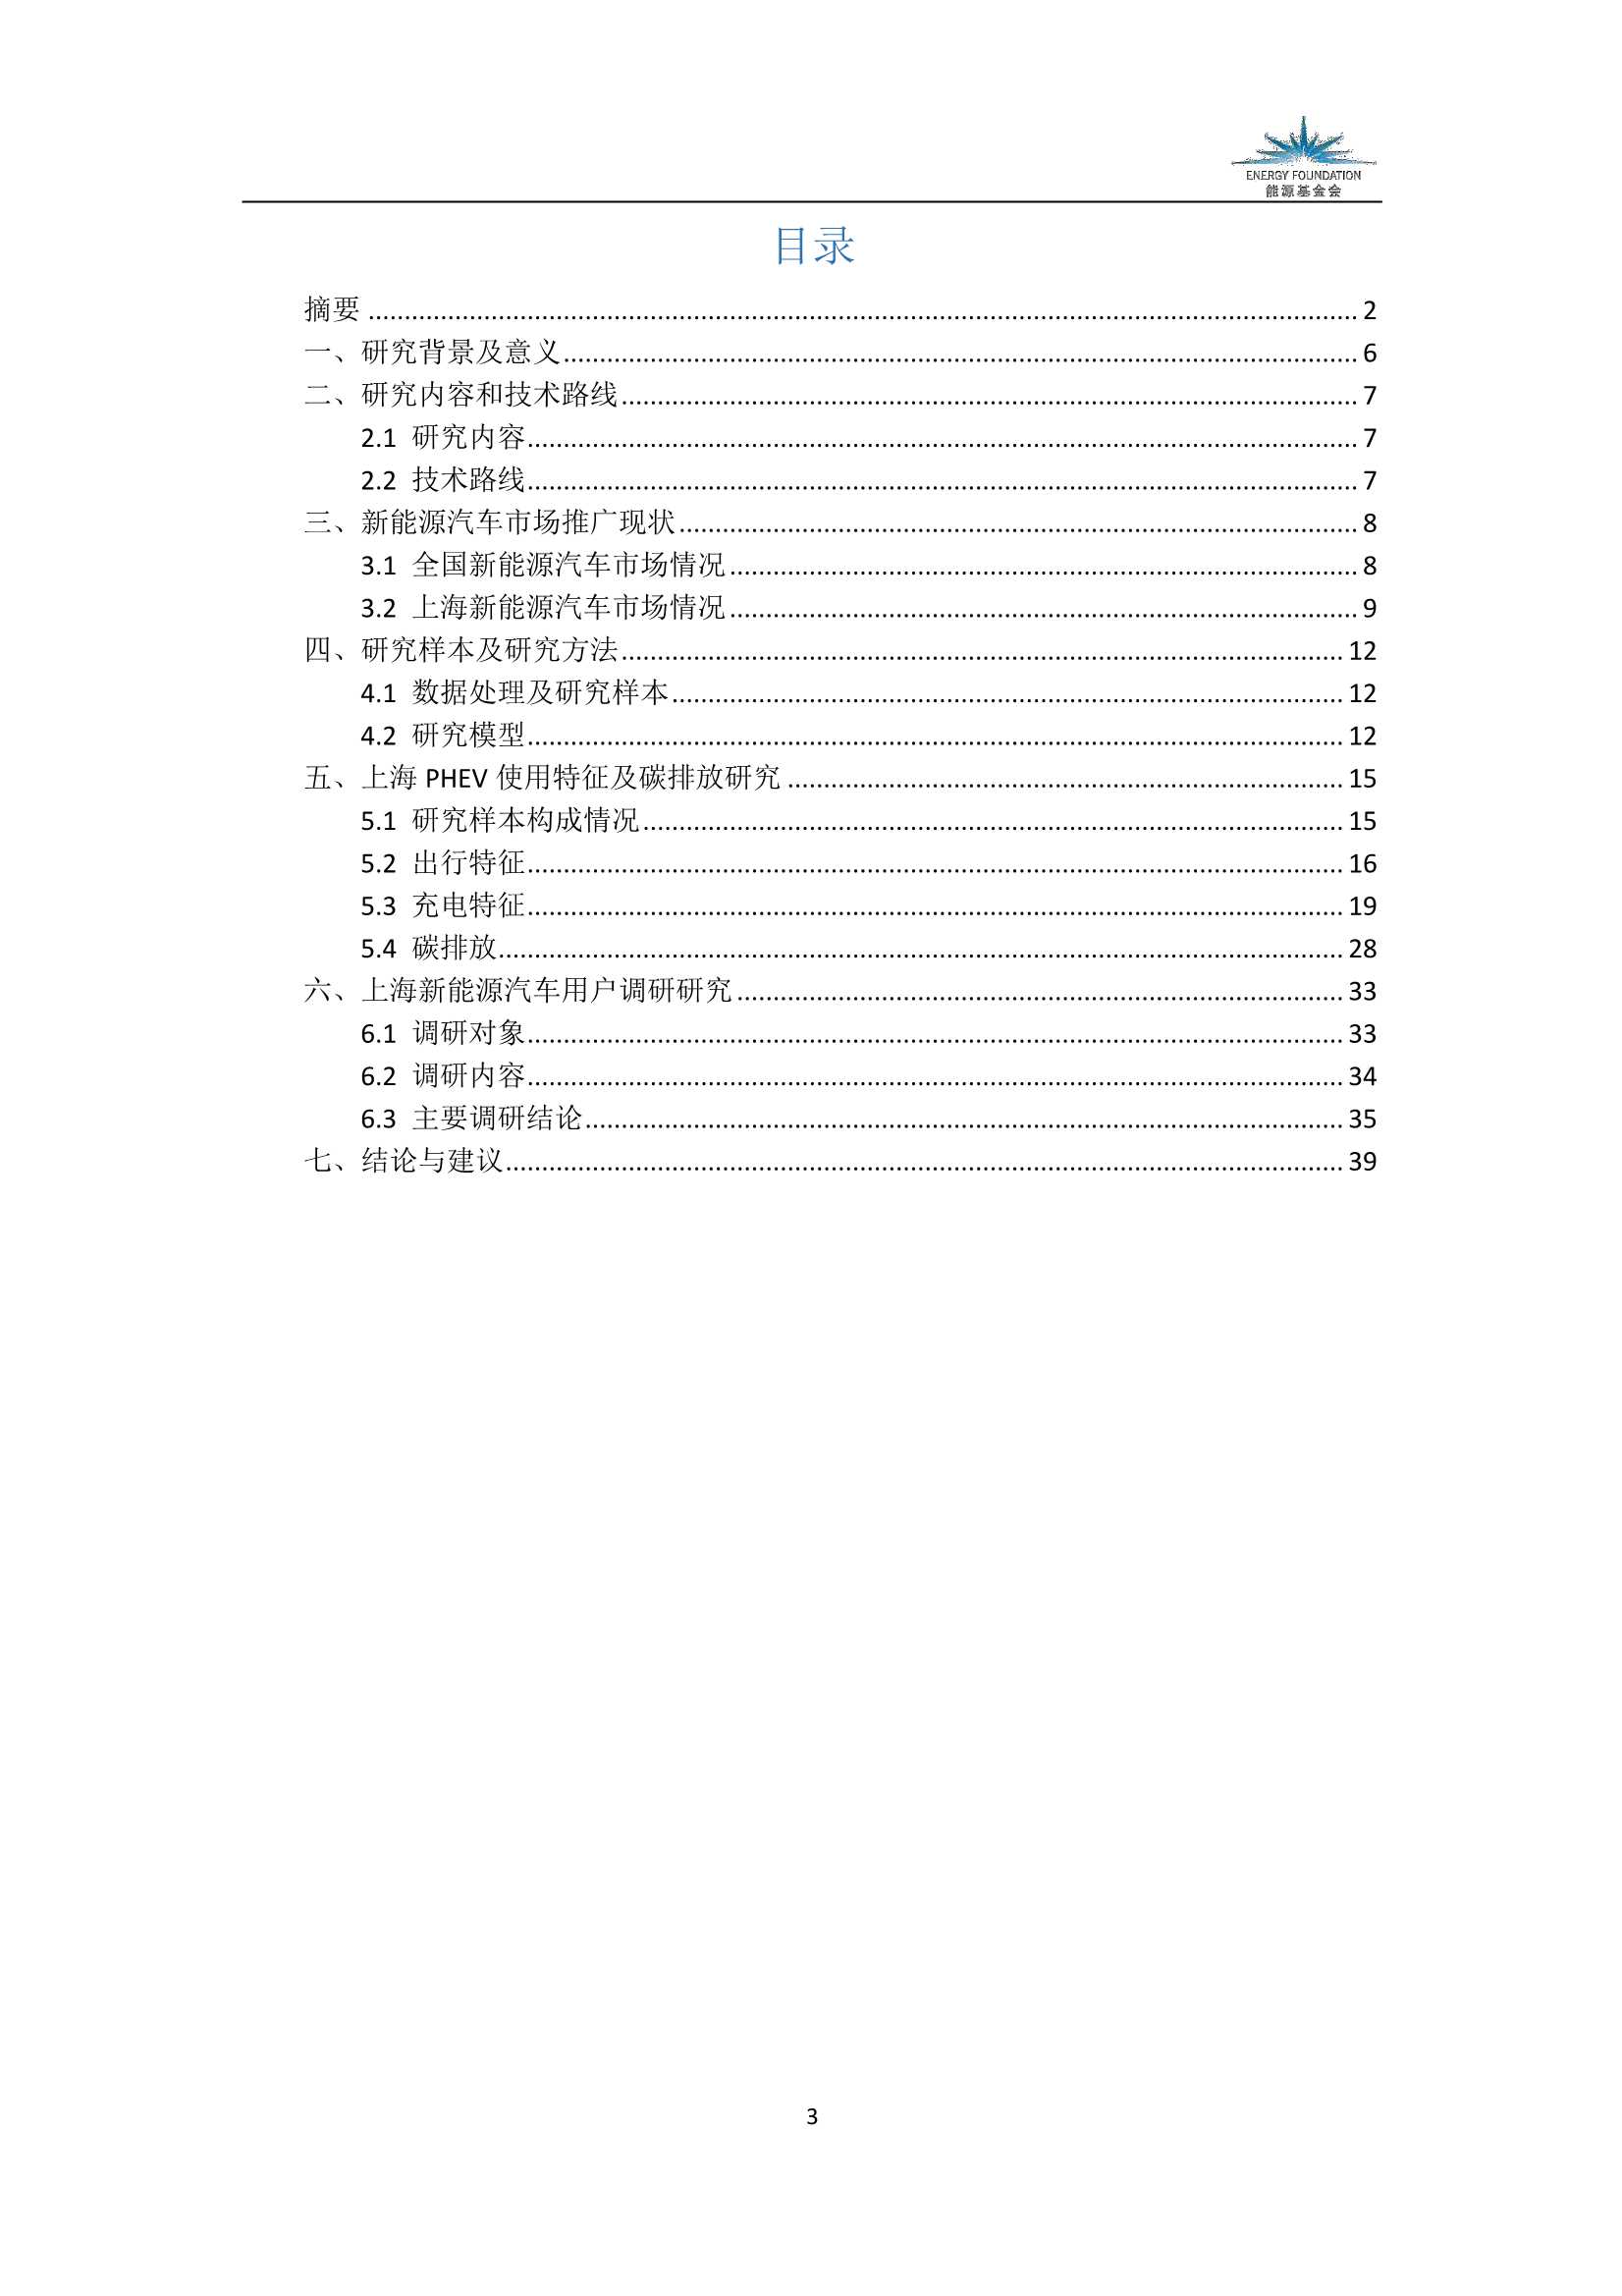 能源基金会-上海PHEV推广应用评估及“十四五”政策建议研究-2022.03-40页